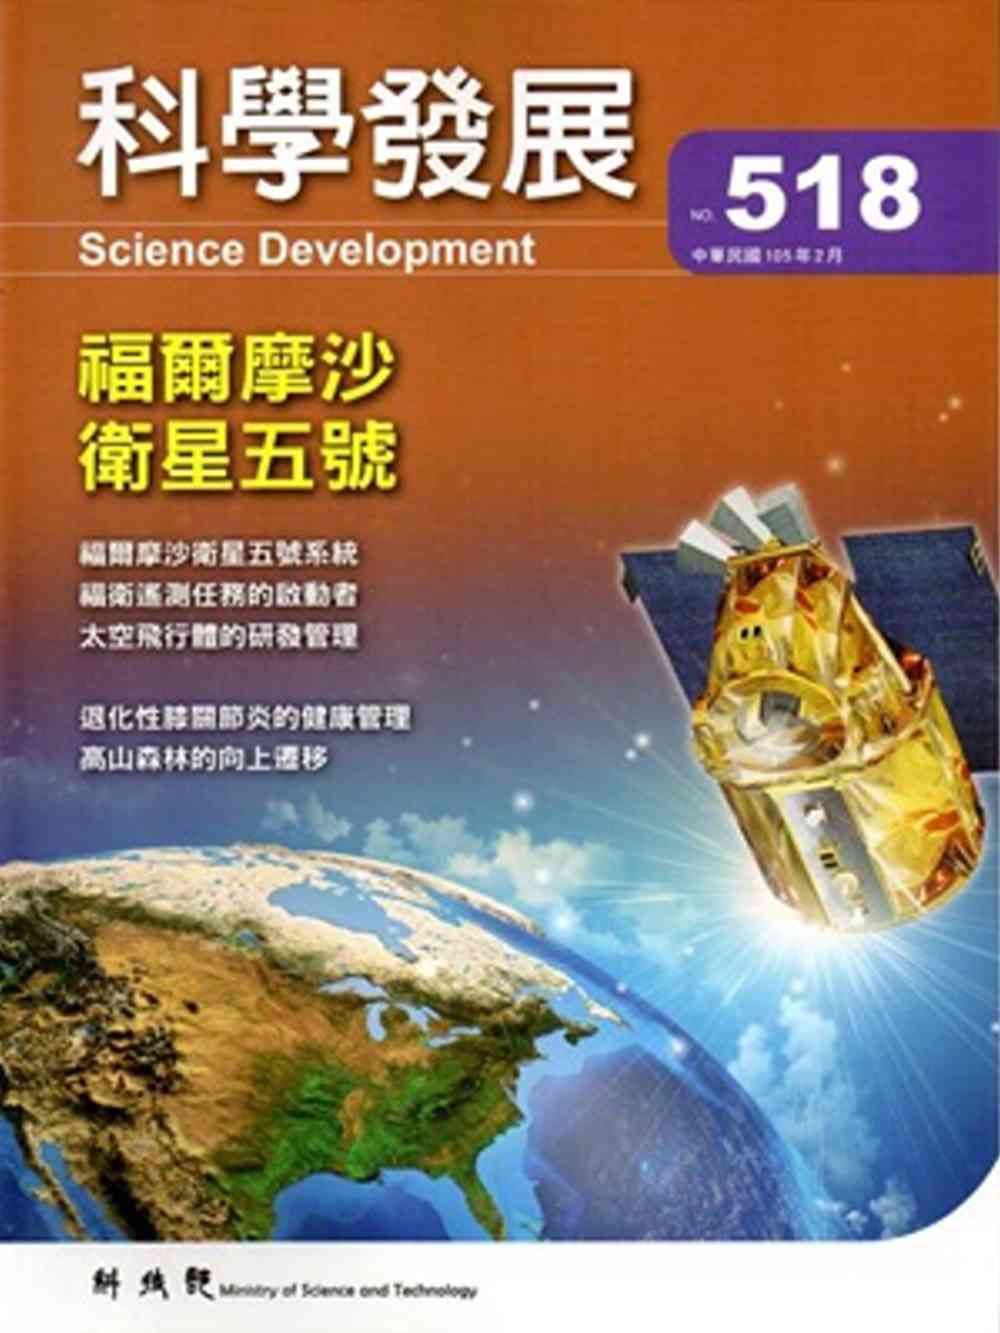 科學發展月刊第518期(105/02)